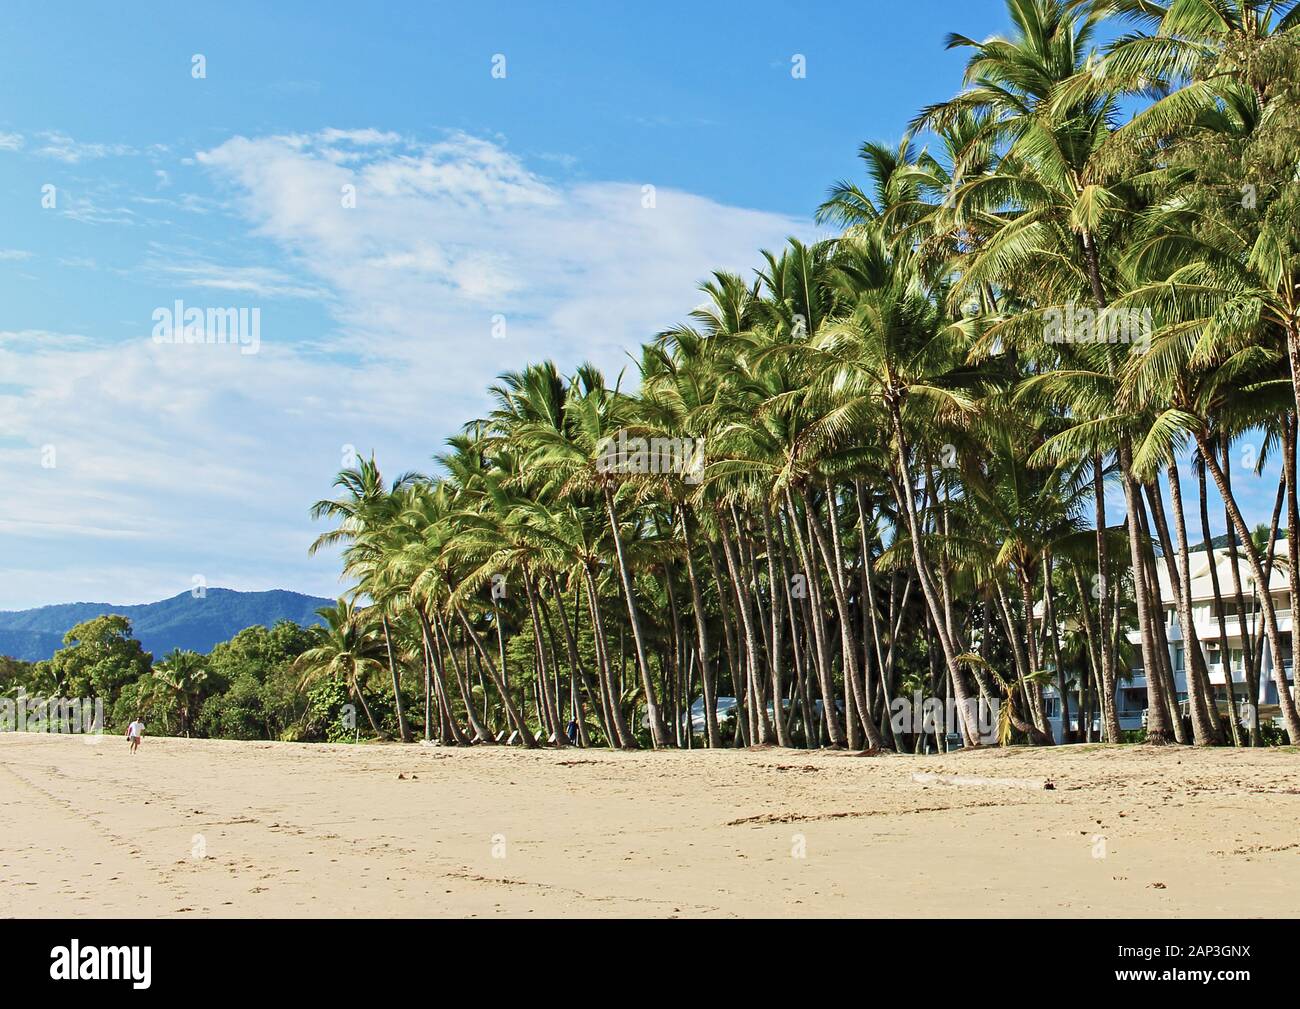 La ligne de palmiers sur la plage en face de l'hôtel Alamanda Resort à Palm Cove à l'extrémité supérieure de l'plages du nord de Cairns, Queensland, Australie Banque D'Images